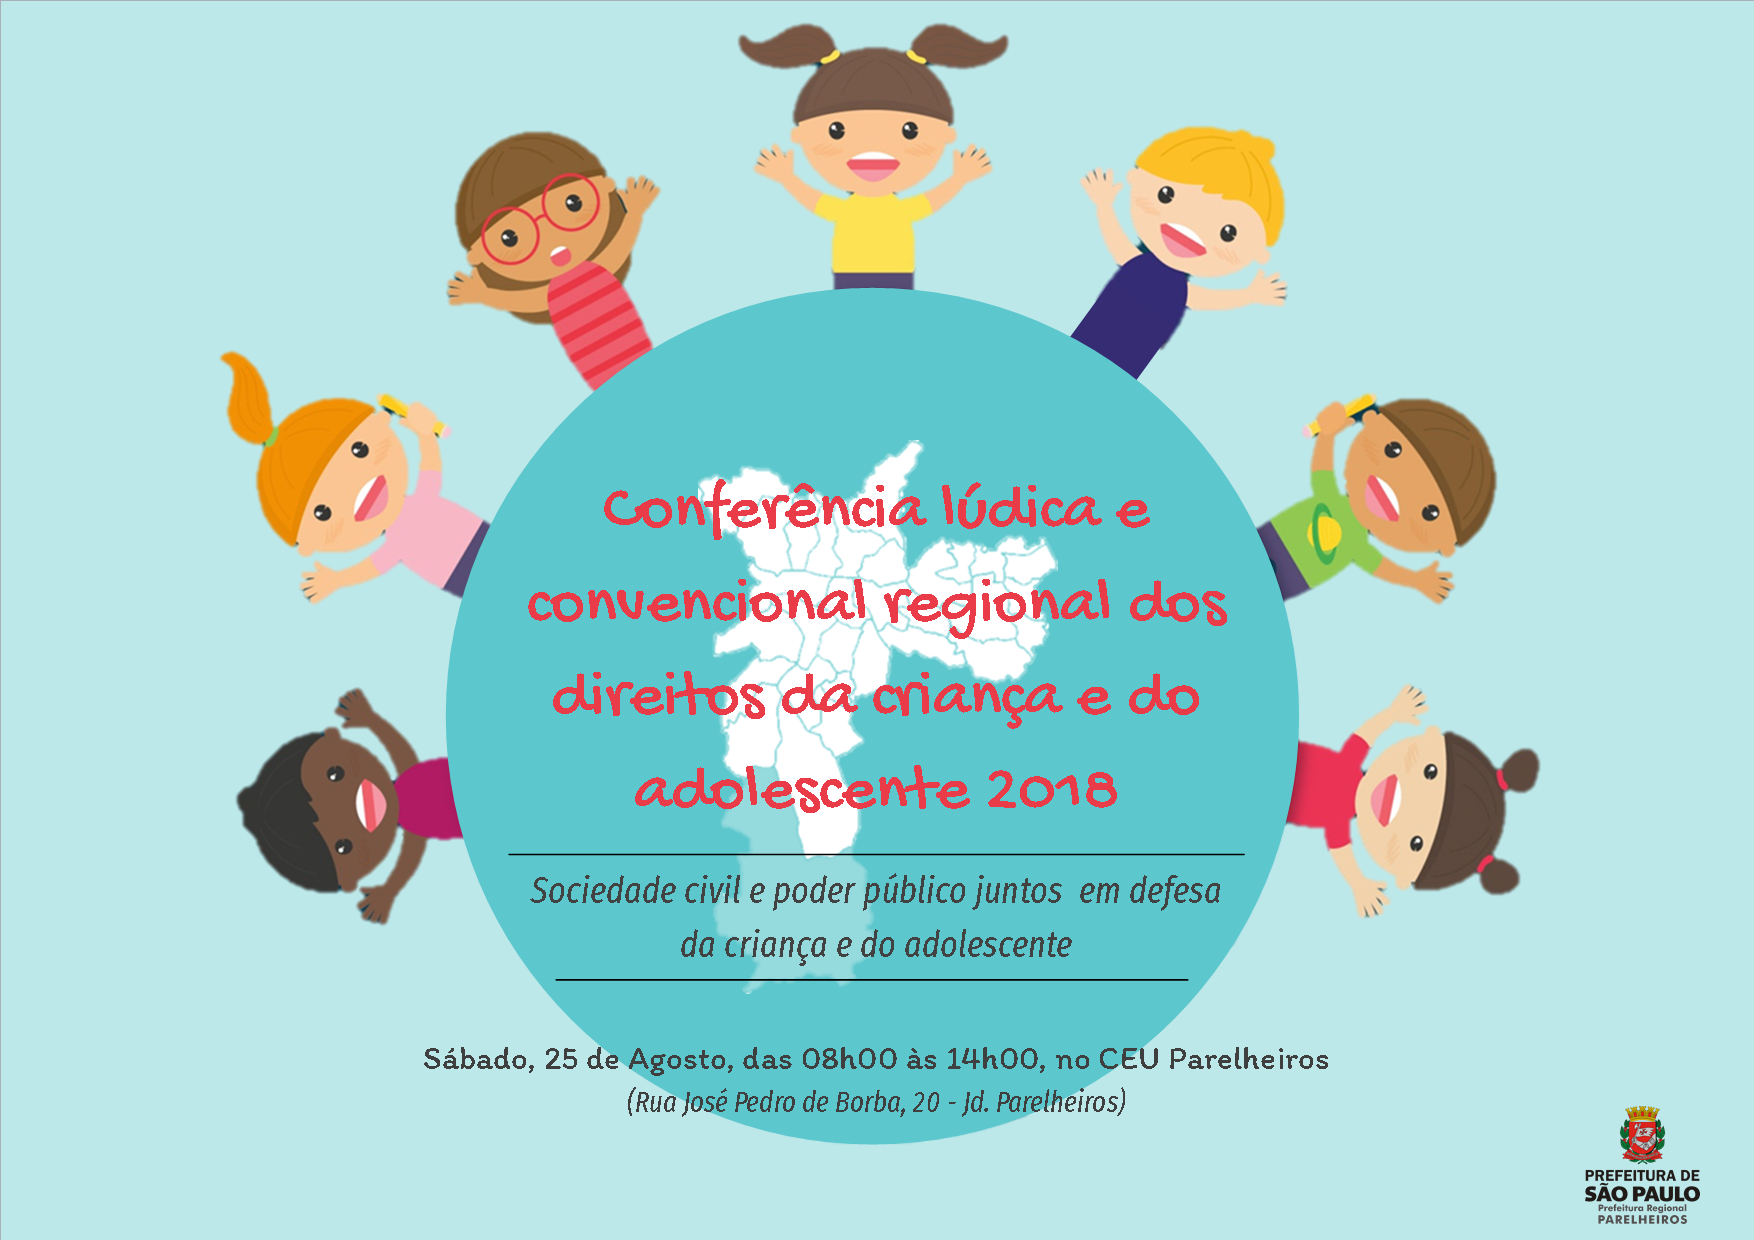 Arte de divulgação da Conferência Lúdica Regional dos direitos da criança e do adolescente de 2018